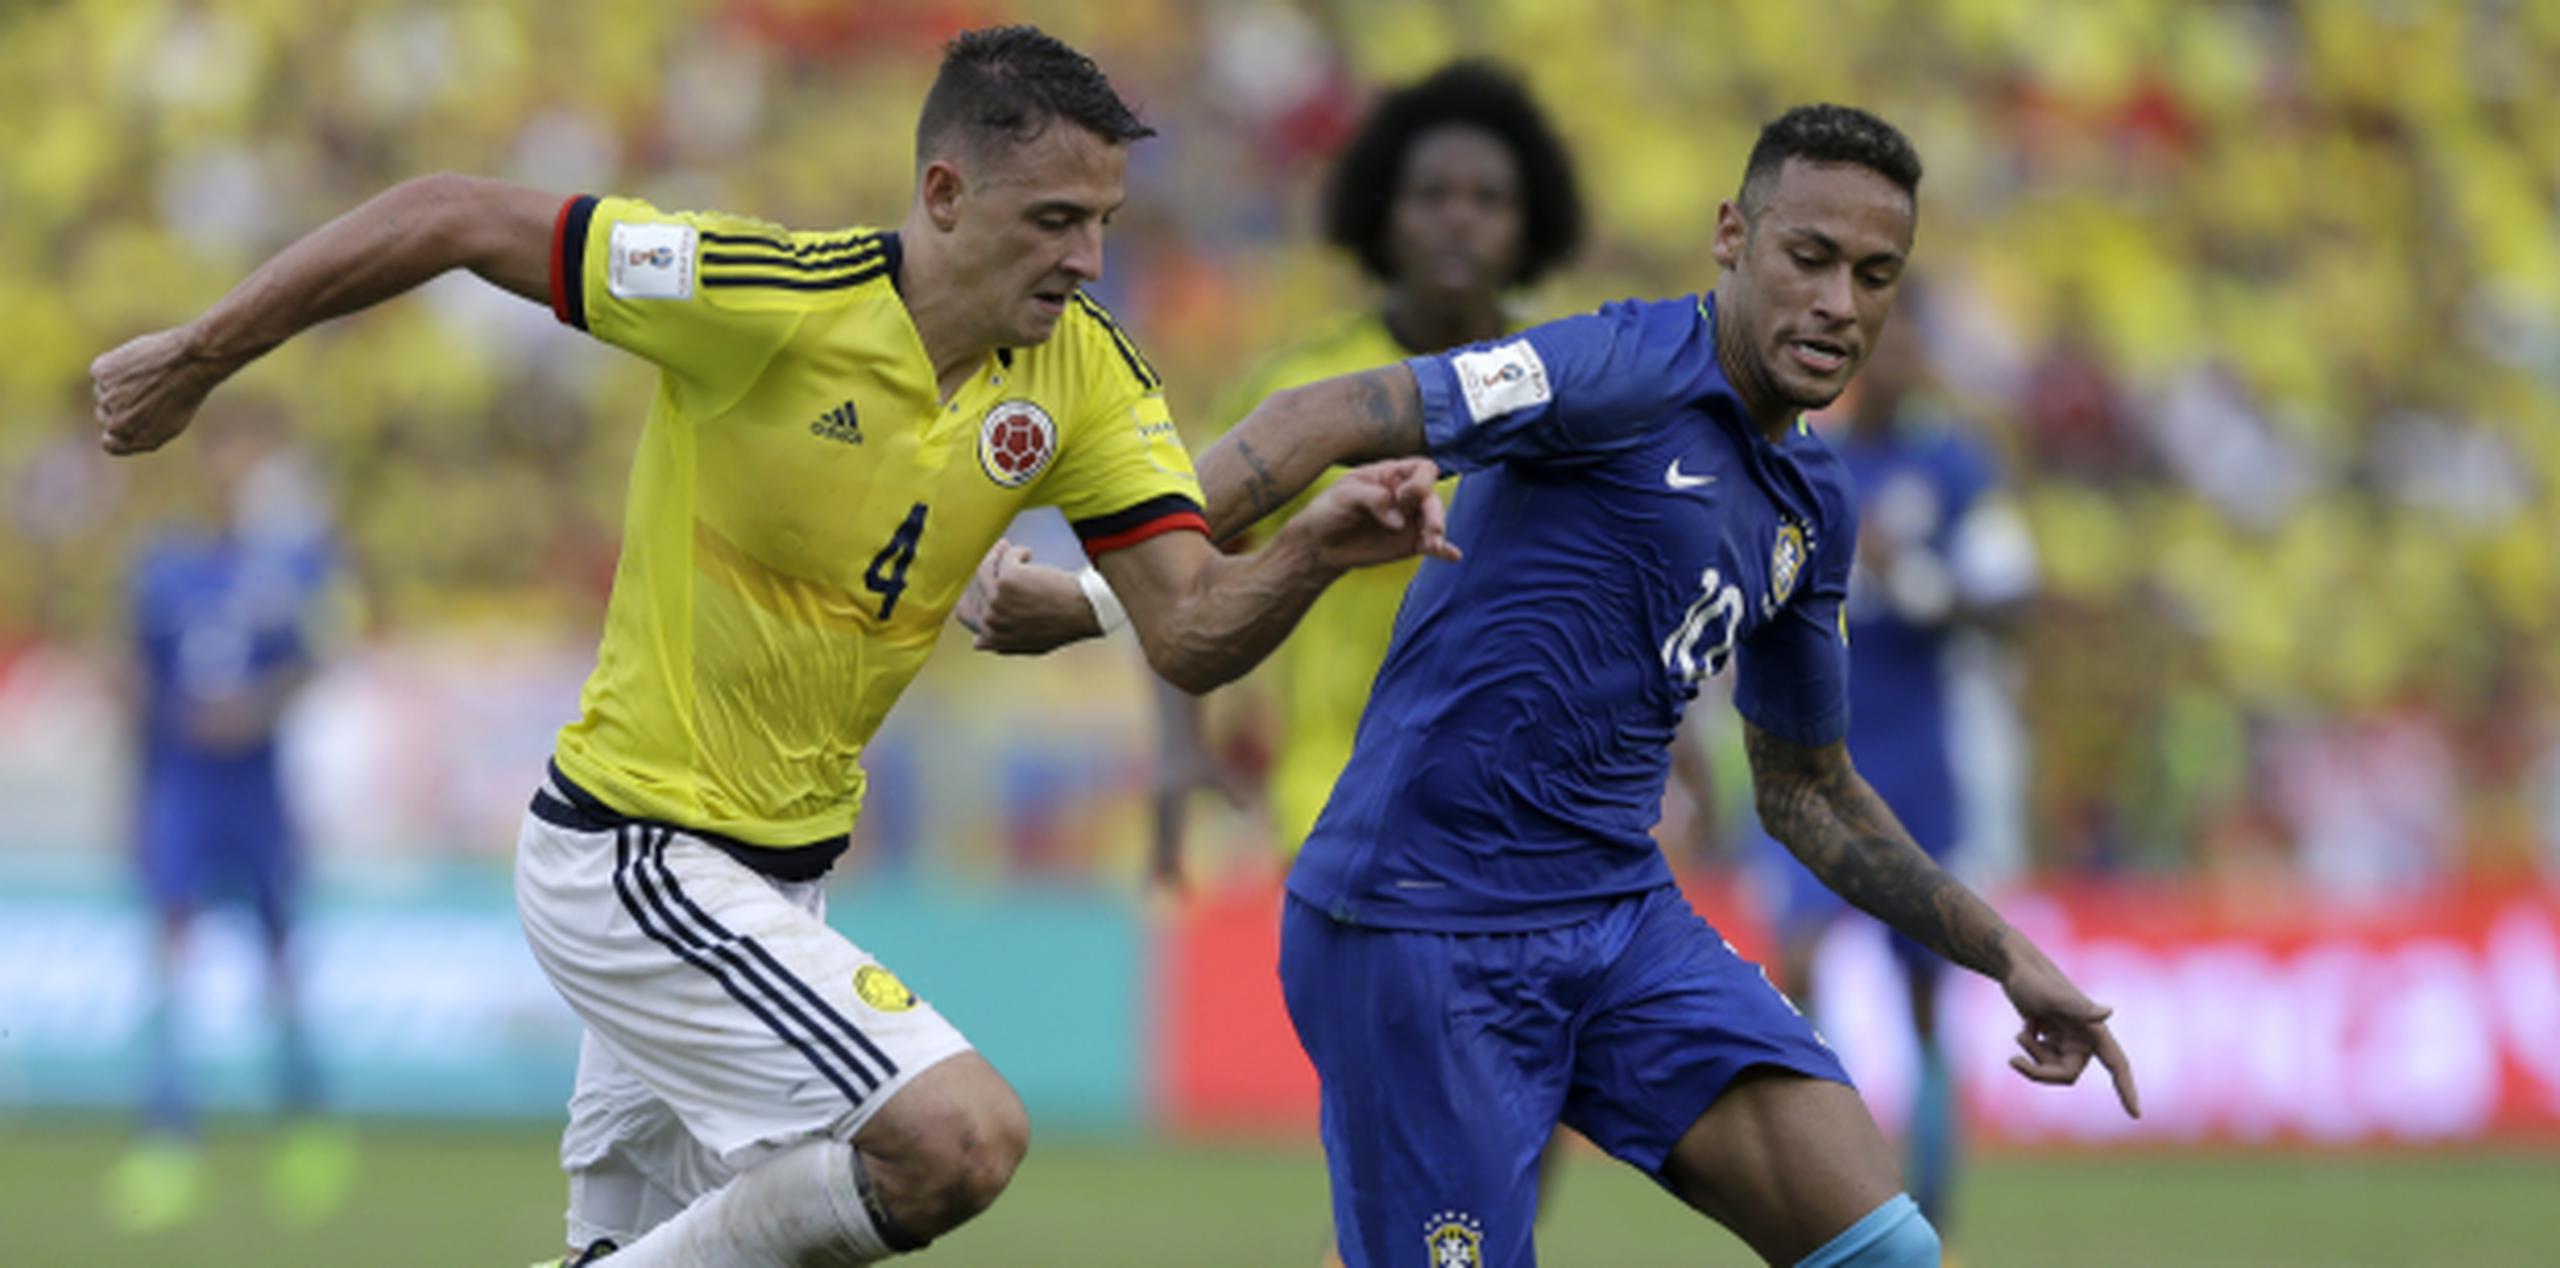 El jugador de Brasil, Neymar -derecha- disputa un balón con el jugador de Colombia, Santiago Arias, en un partido por las eliminatorias mundialistas el pasado 5 de septiembre Barranquilla, Colombia. (AP / Fernando Vergara)